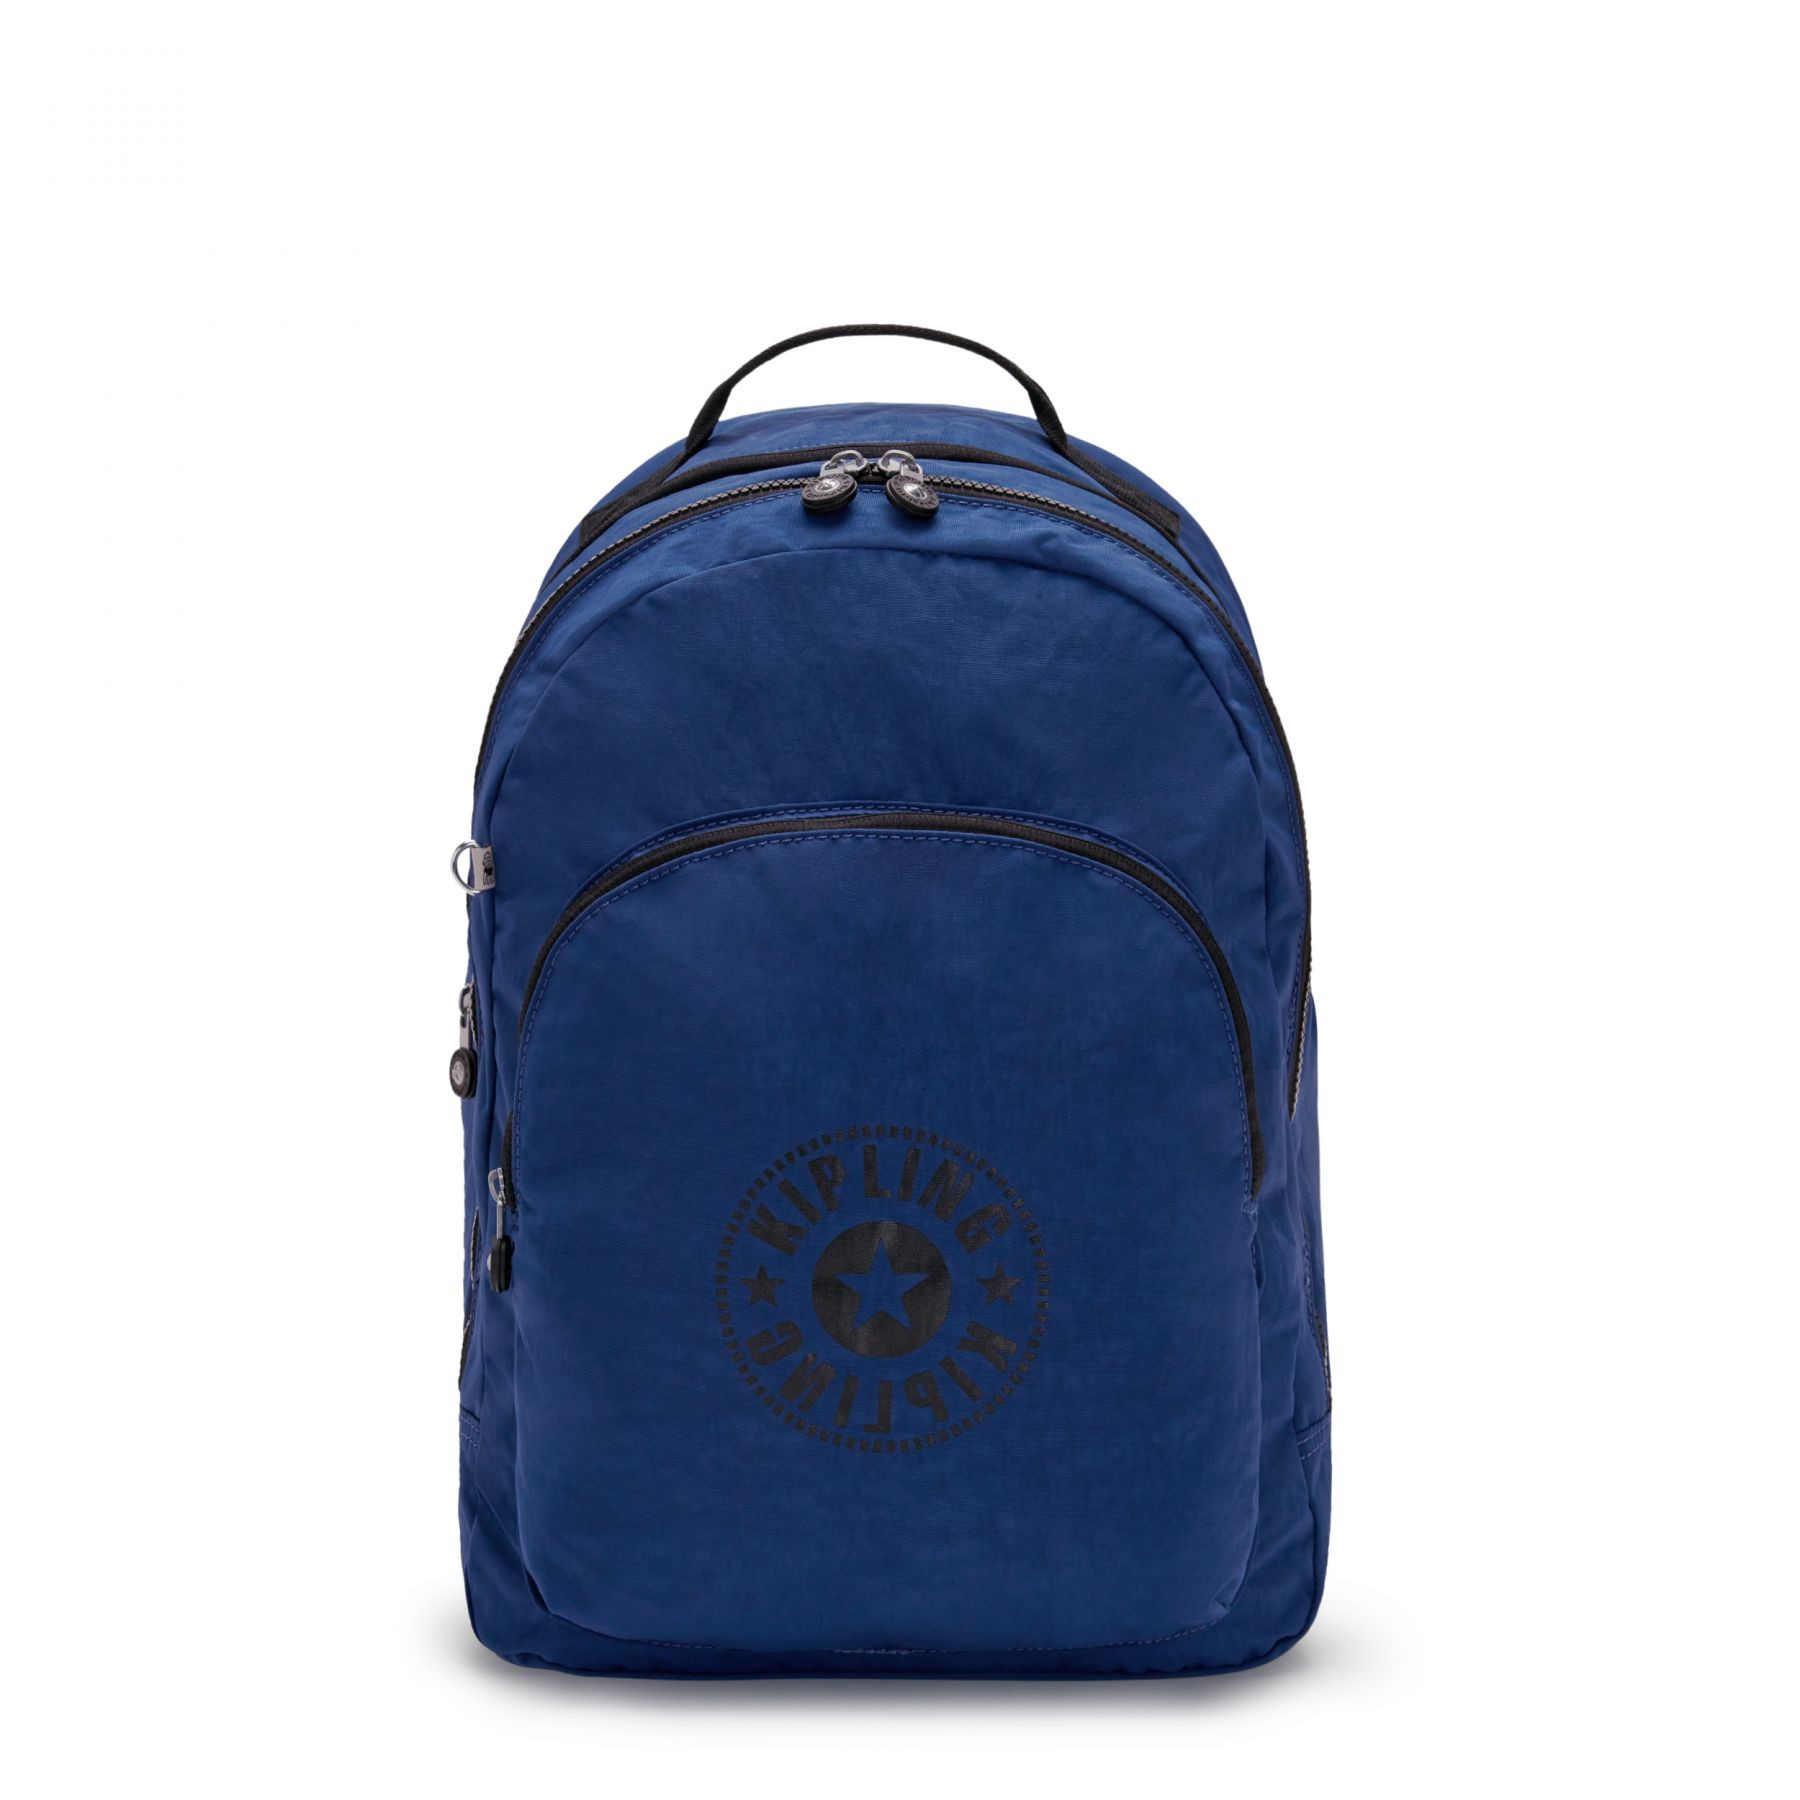 Backpack Curtis XL Admiral Blue - KIPLING